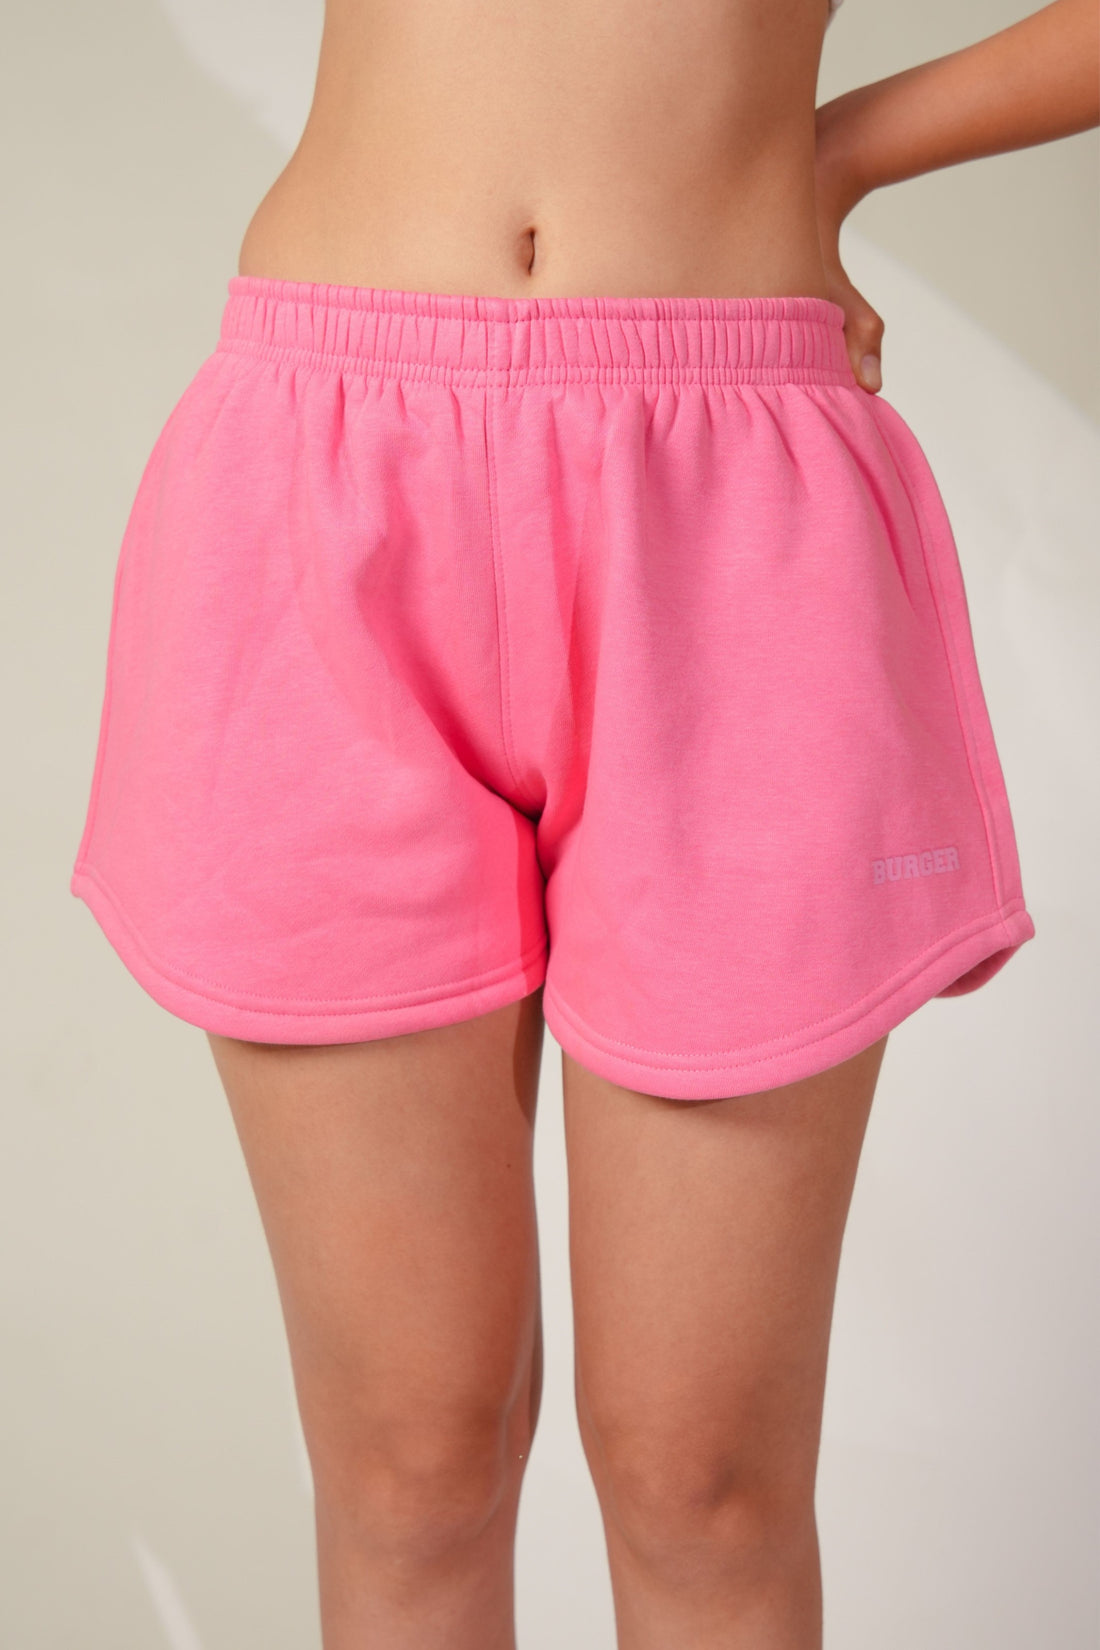 Kelly Sweat Shorts for women